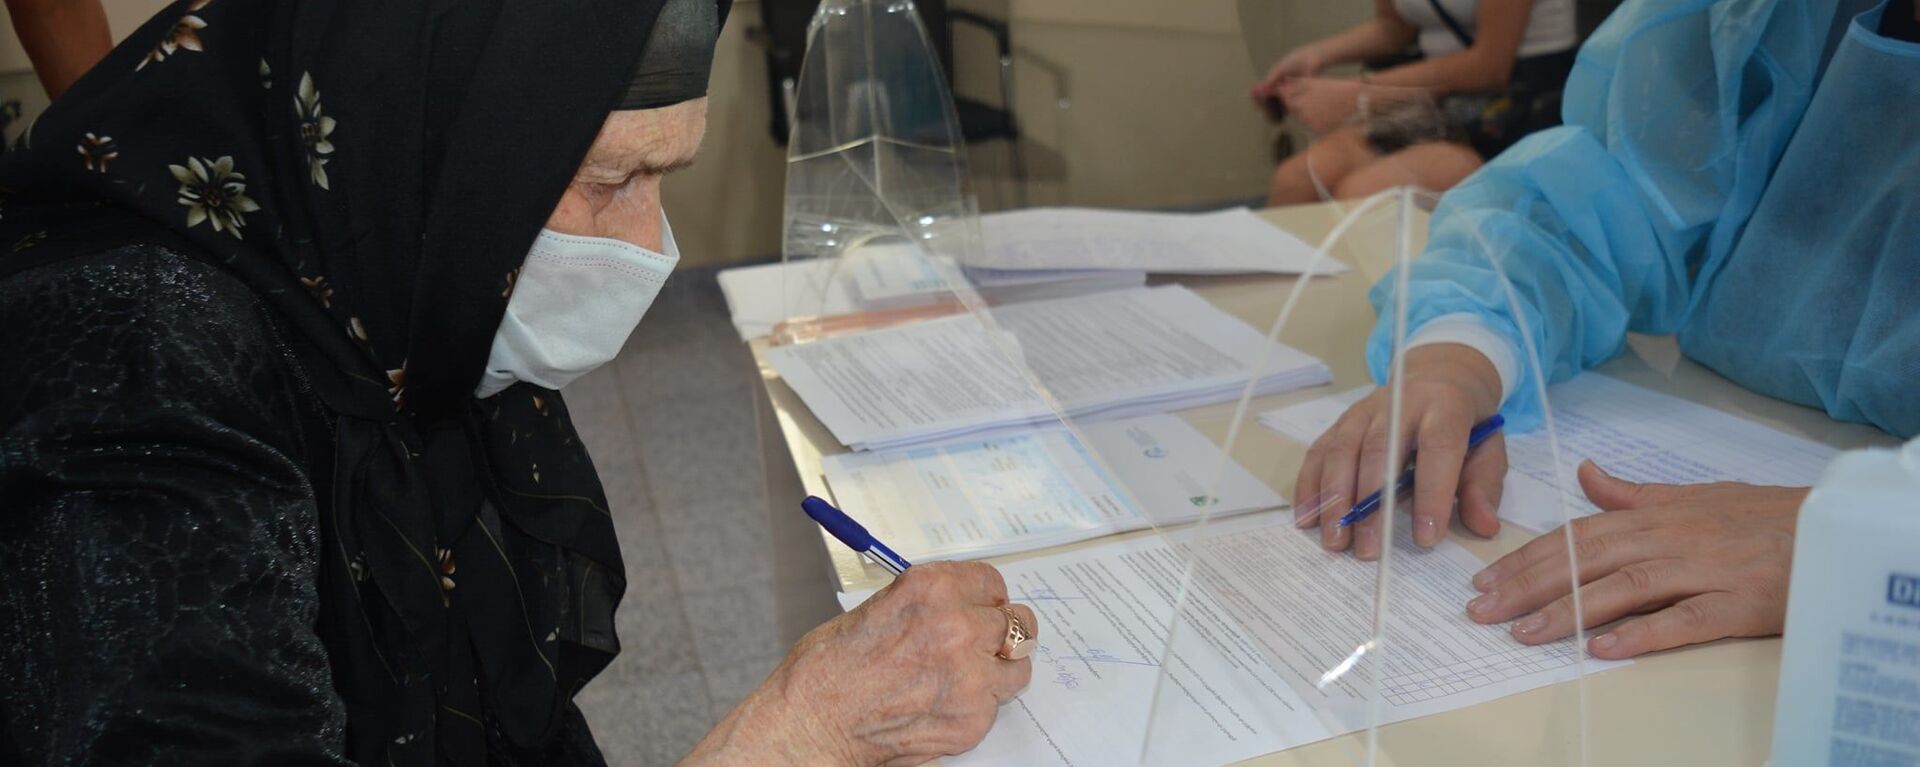 Эпидемия коронавируса и вакцинация. 102-летняя Эмине Джорбенадзе сделала вакцину Pfizer - Sputnik Грузия, 1920, 05.08.2021